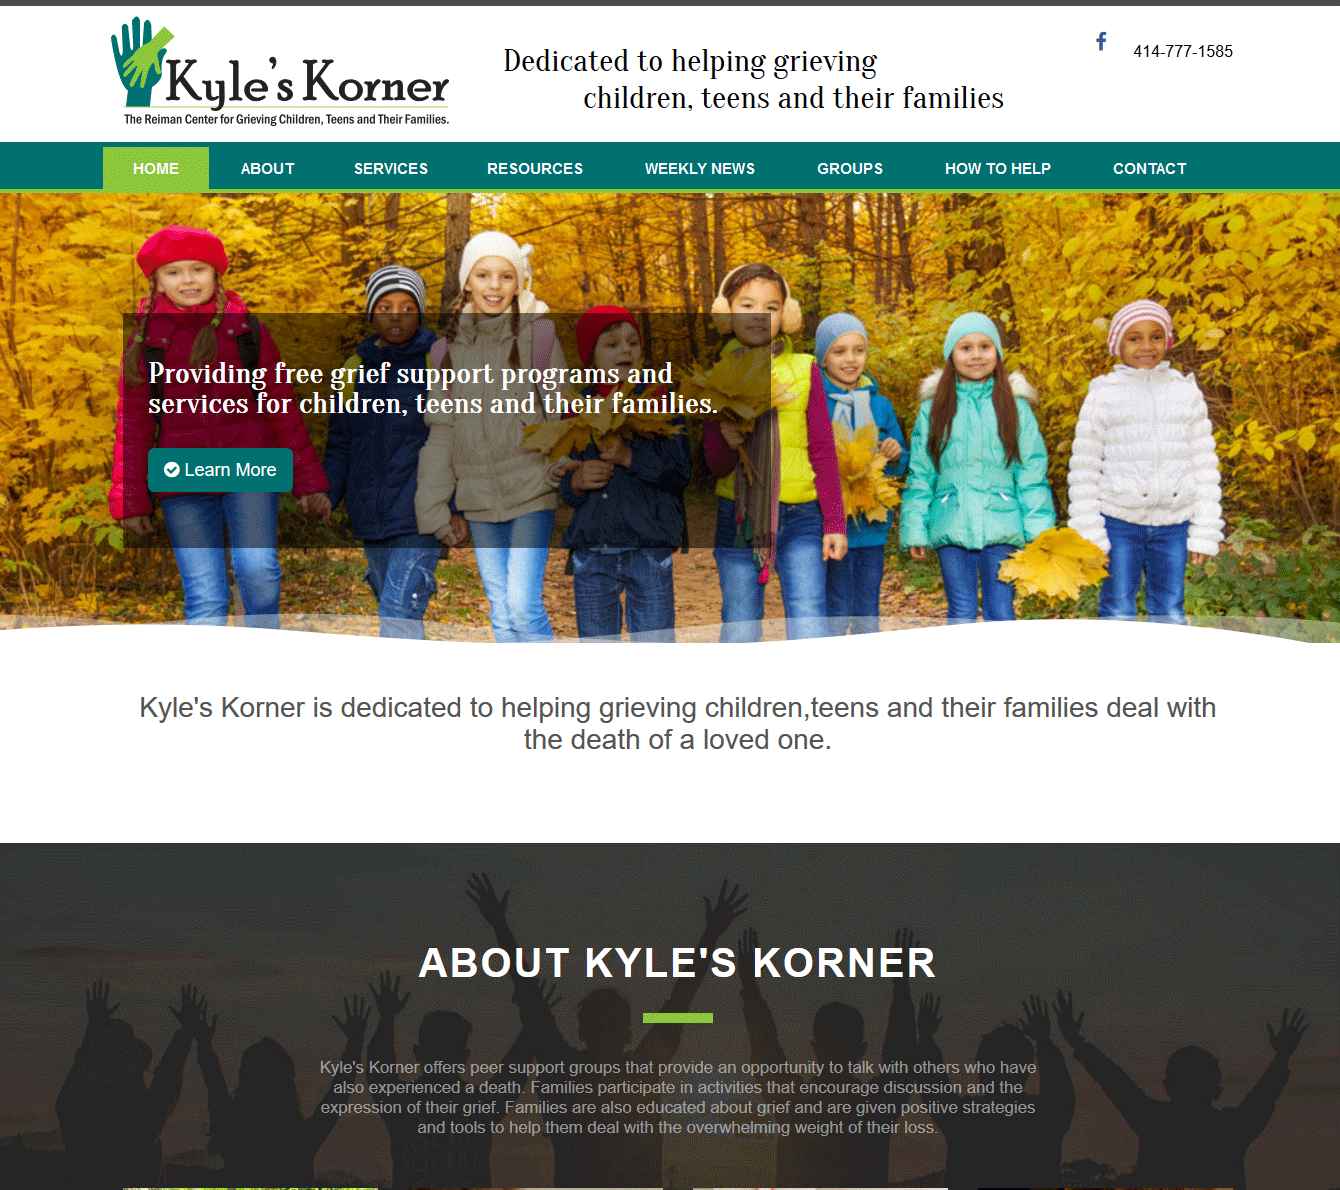 Kyle's Korner